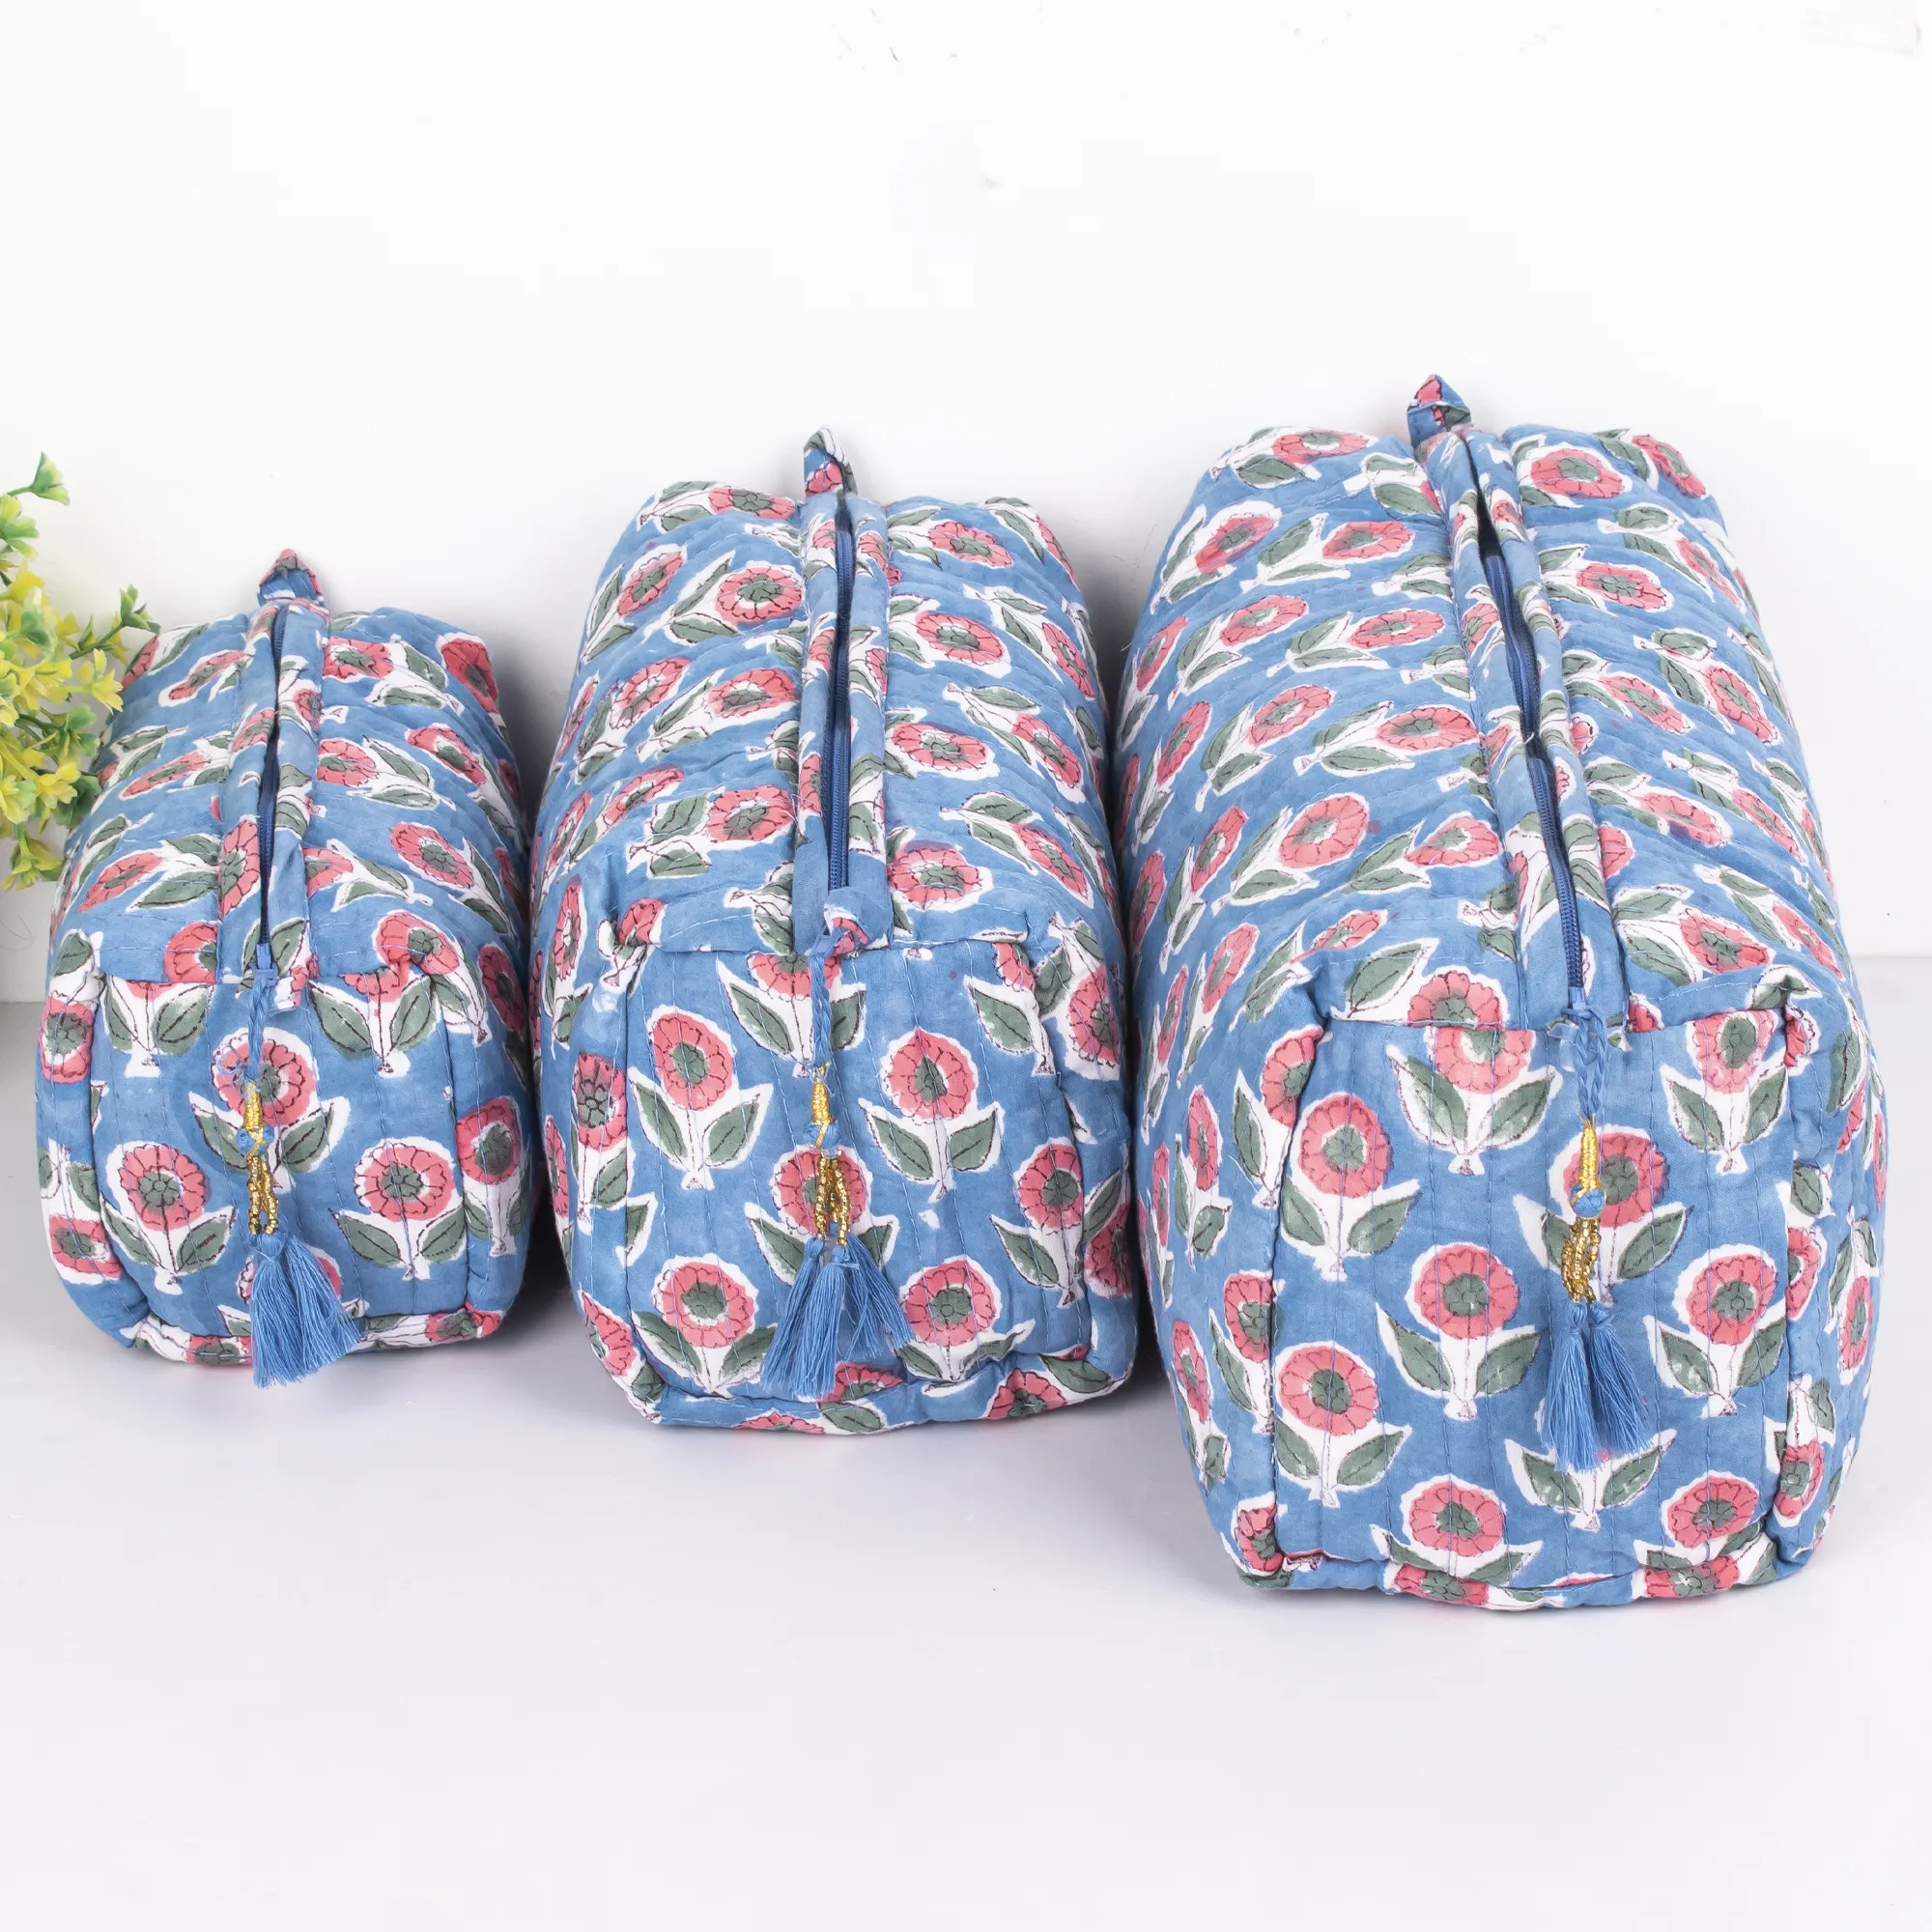 حقيبة ماكياج قطنية مطبوعة بالزهور من سانغانيري اليدوية مجموعة حقيبة مستحضرات تجميل مبطنة منظم سفر 3 قطع حقيبة أدوات تجميل للبيع بالجملة